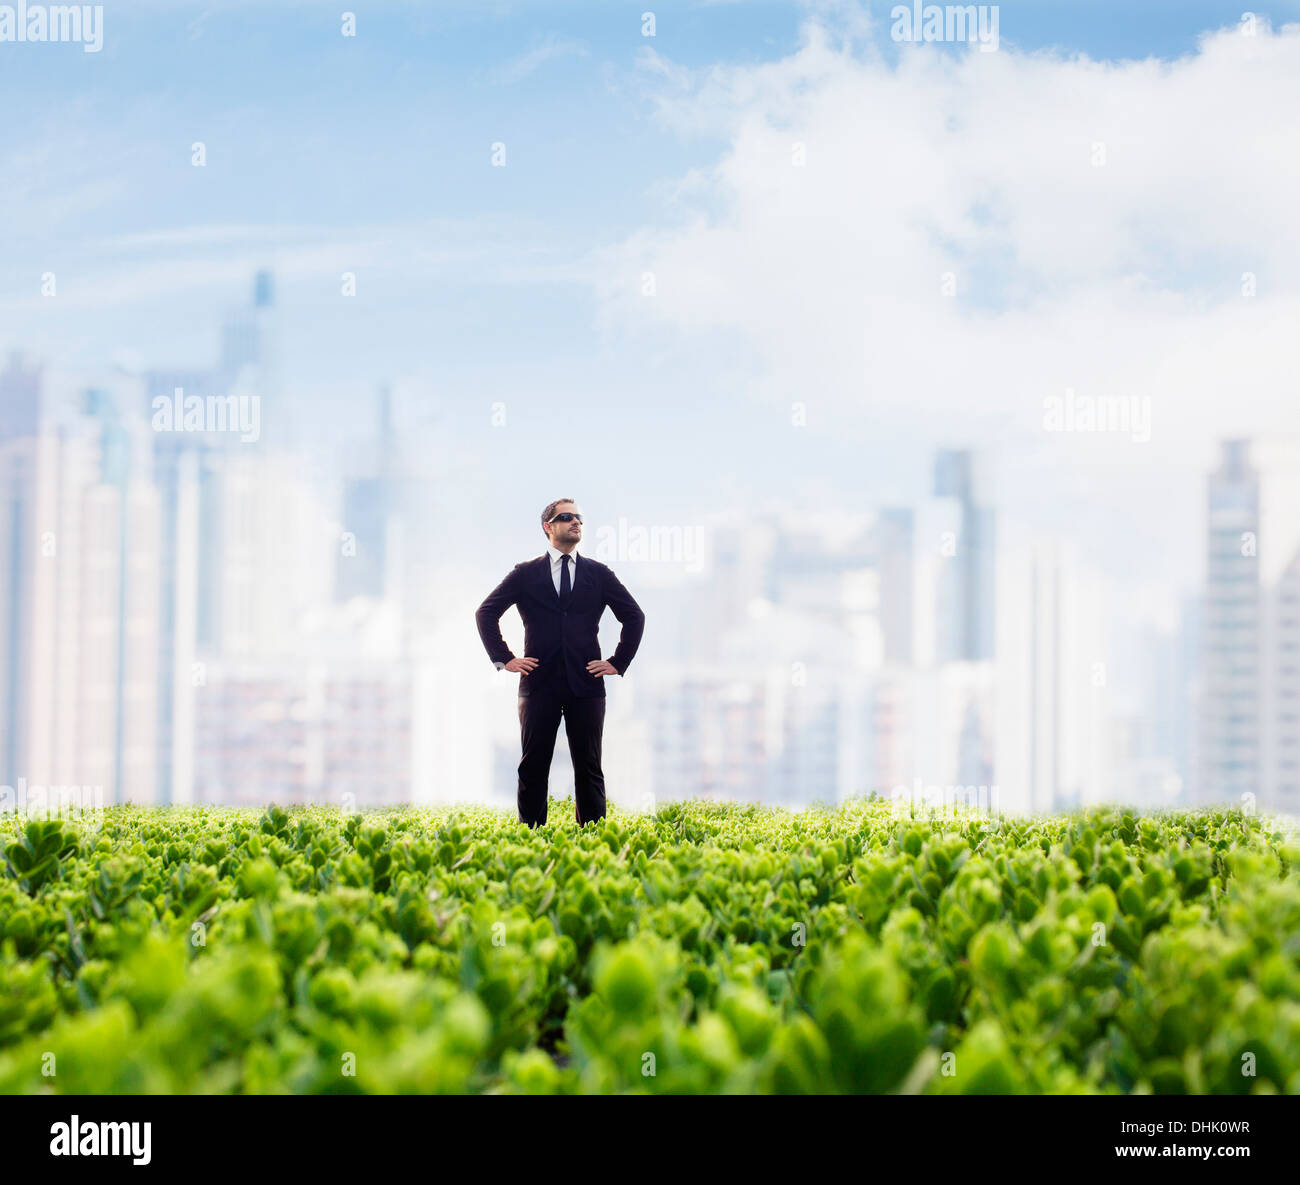 Businessman in lunettes de soleil et les mains sur les hanches debout dans un champ vert avec ville en arrière-plan Banque D'Images